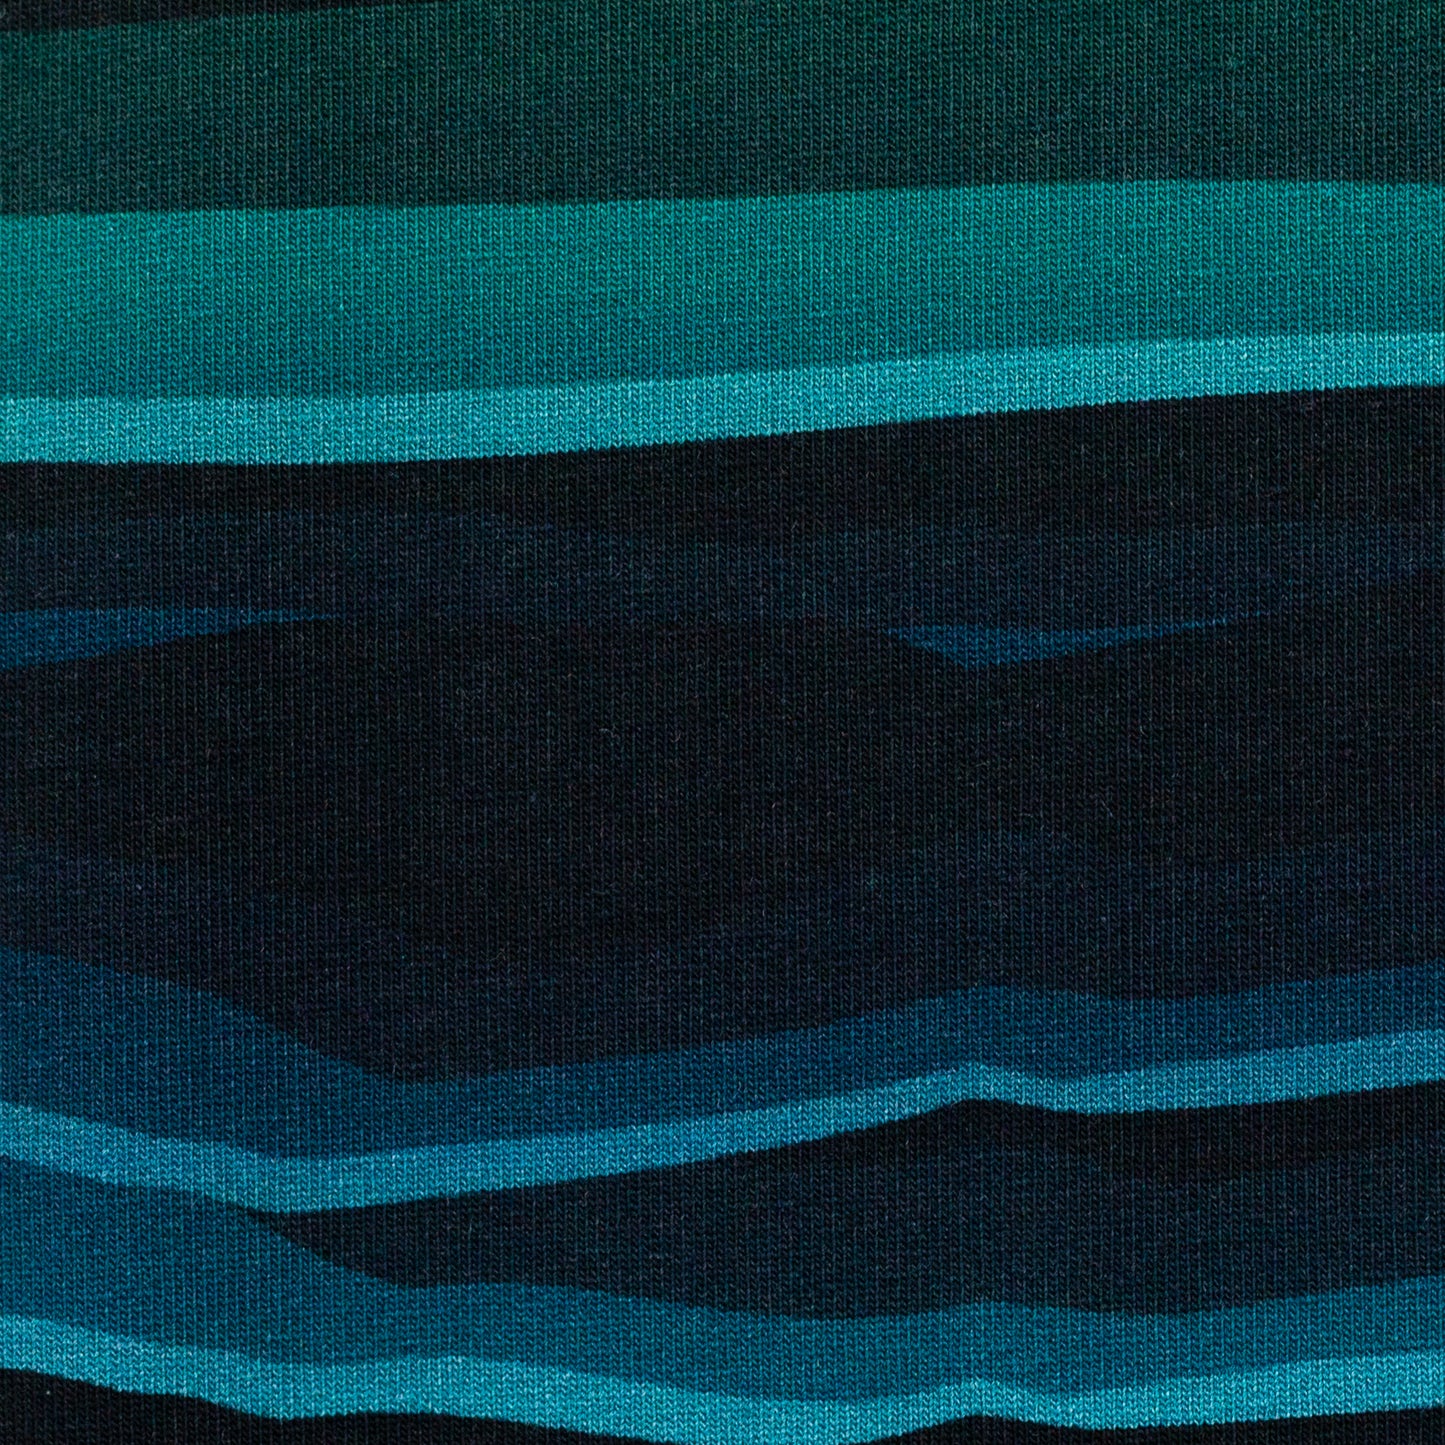 Sweat | Wavy Stripes | Blau Grün | Lycklig Design